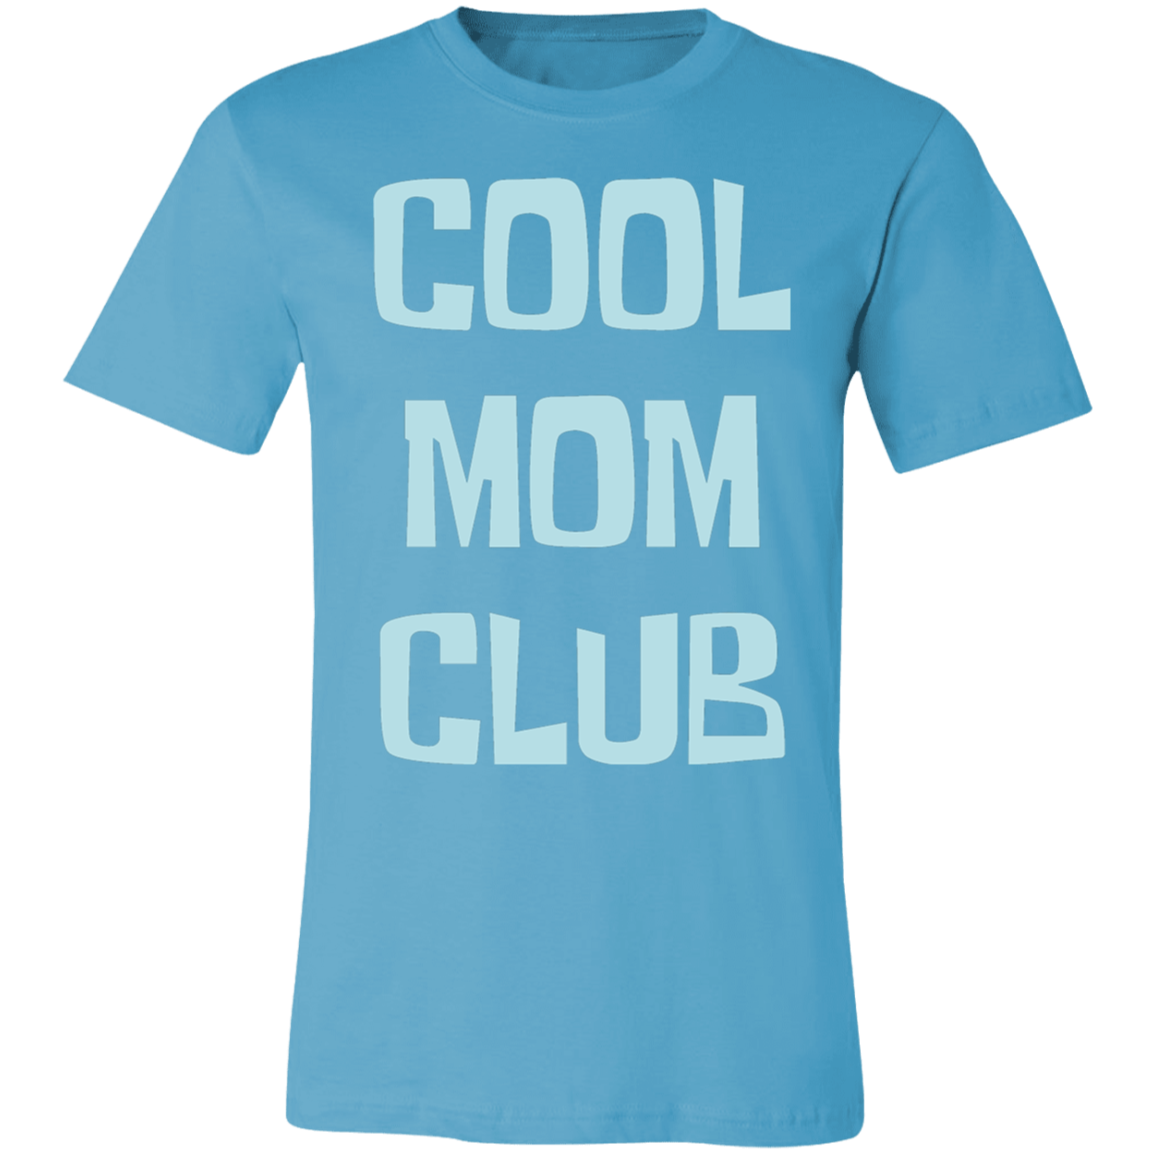 Cool Mom Club Shirt